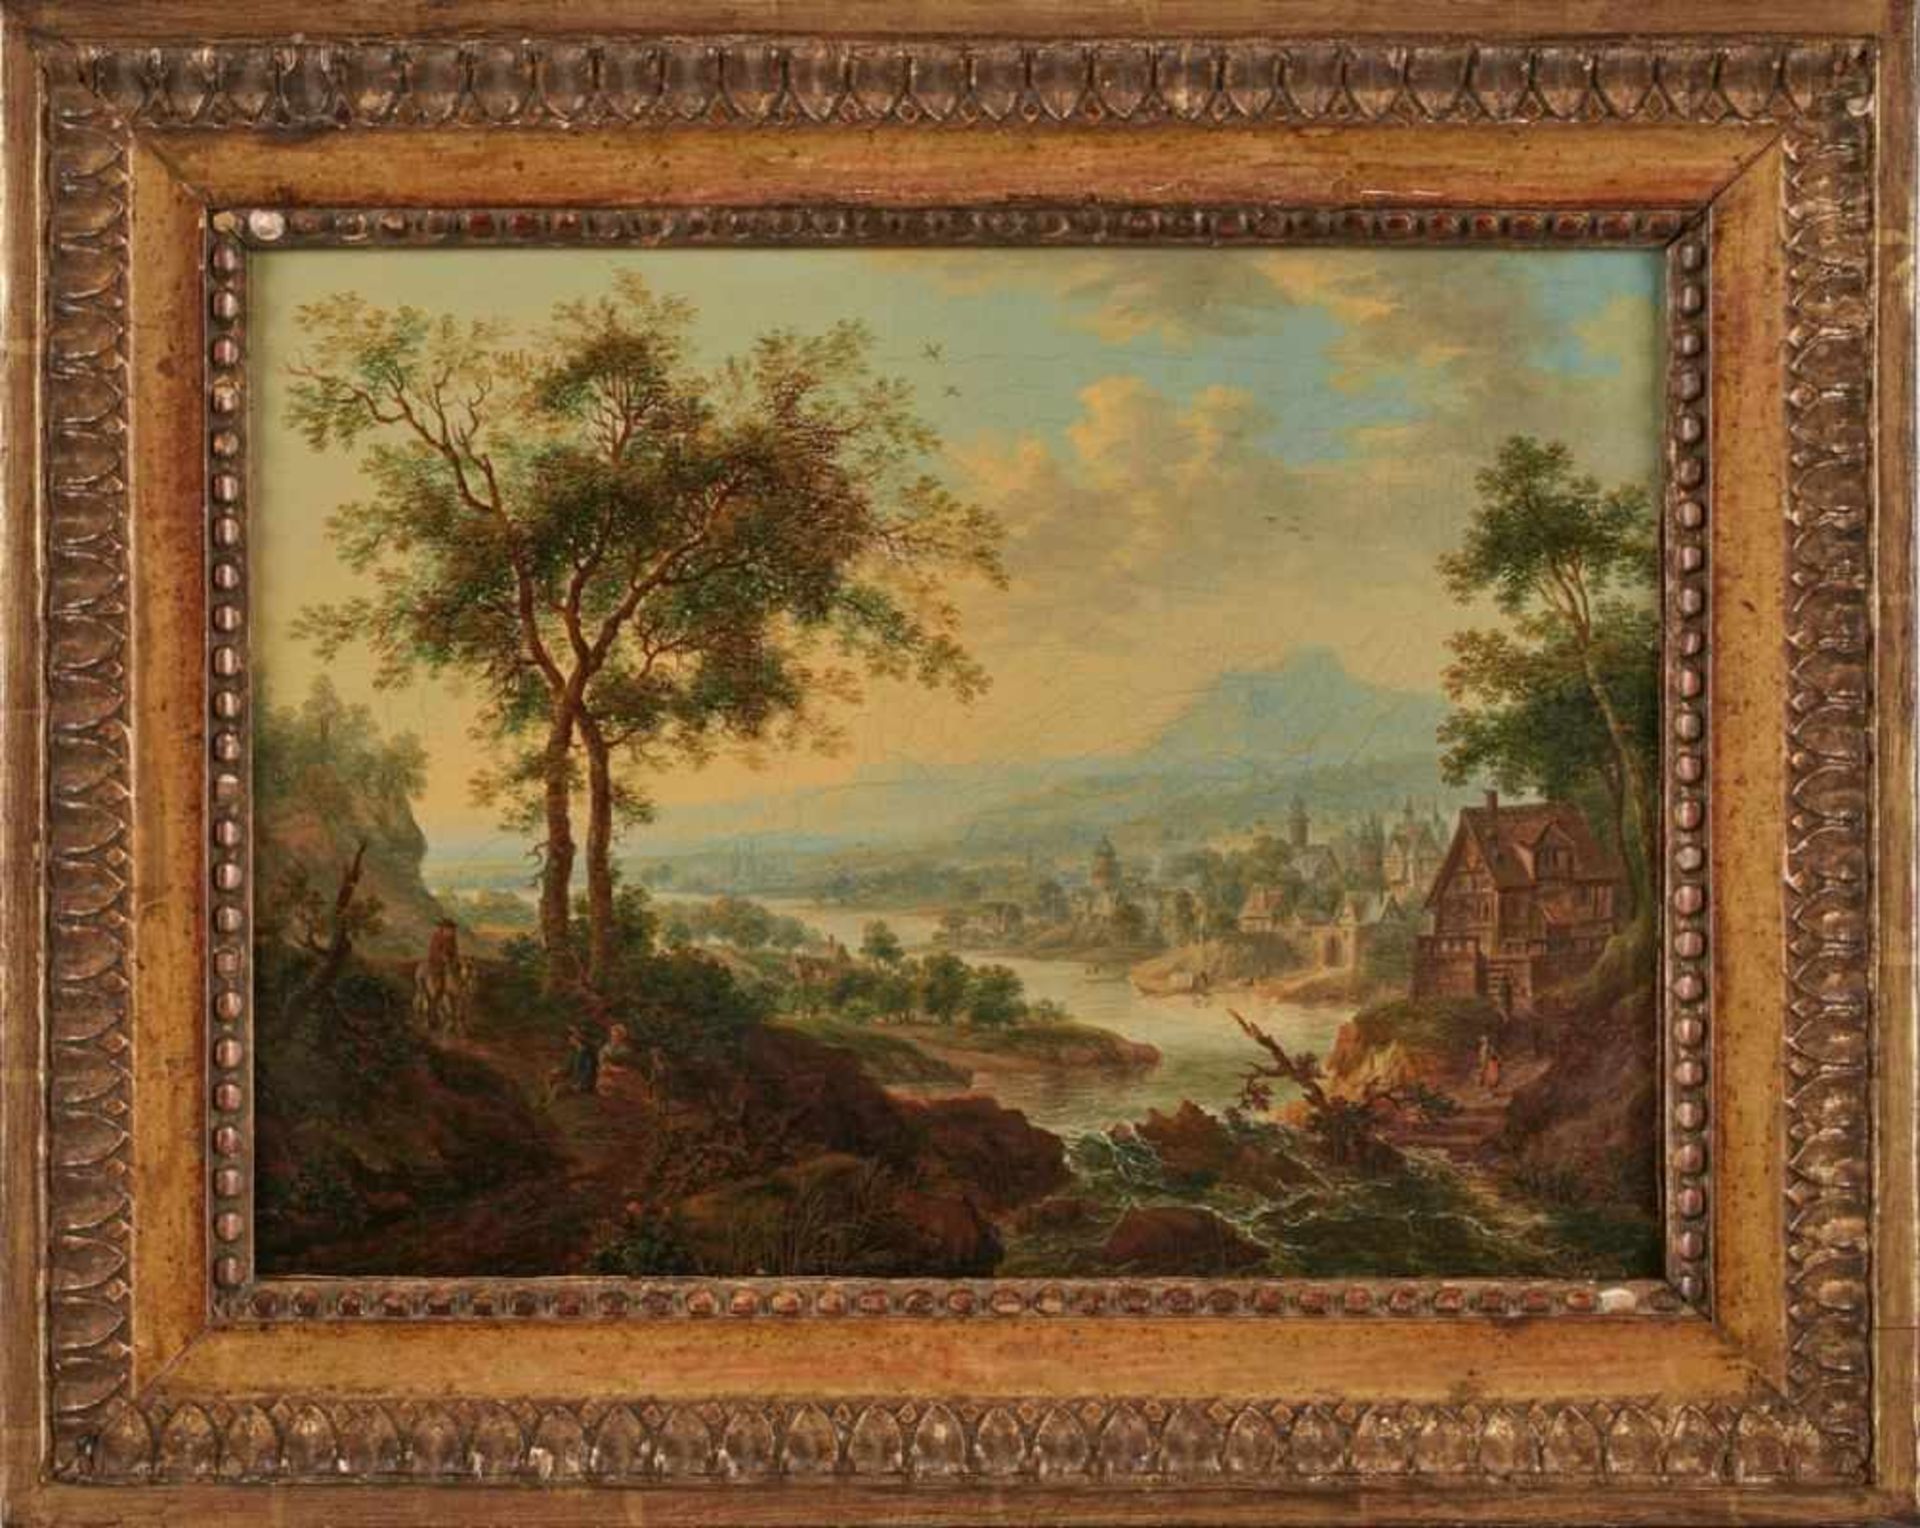 Gemälde Christian Georg Schütz d. Ä., Umkreis des 1718 Flörsheim am Main - 1791 Frankfurt "